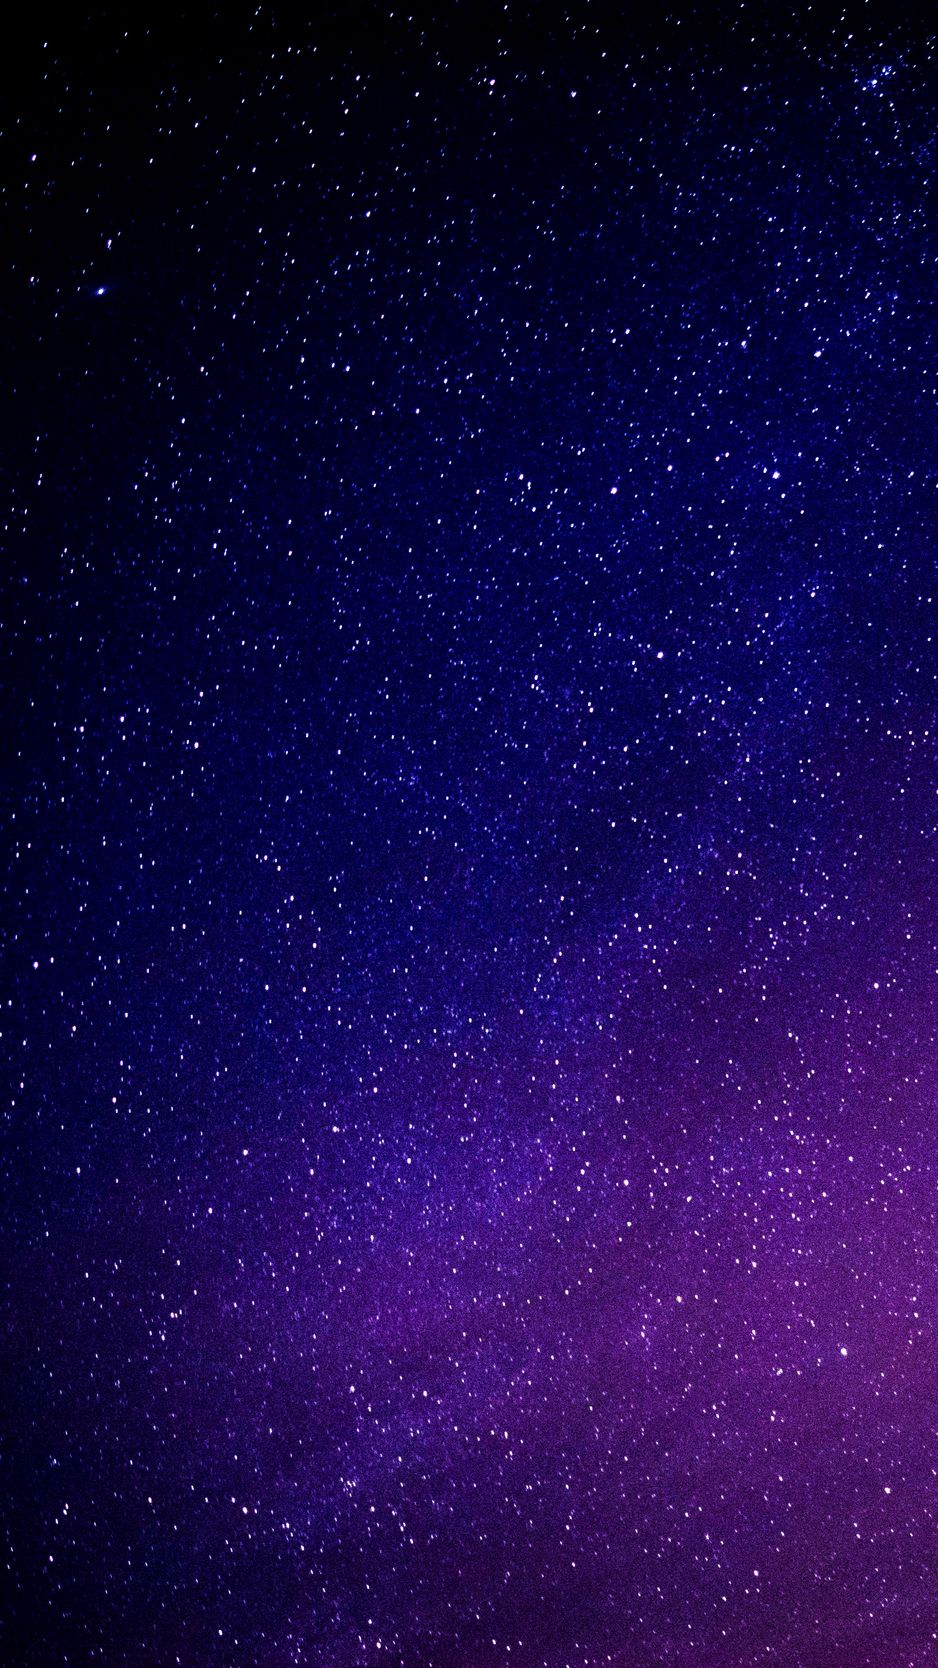 Tải ngay ảnh nền sao trời, dải ngân hà lấp lánh, đêm đầy màu sắc. Hãy trang trí máy tính của bạn với những hình ảnh tuyệt vời này và khám phá thế giới xa xôi mà chúng mang lại.